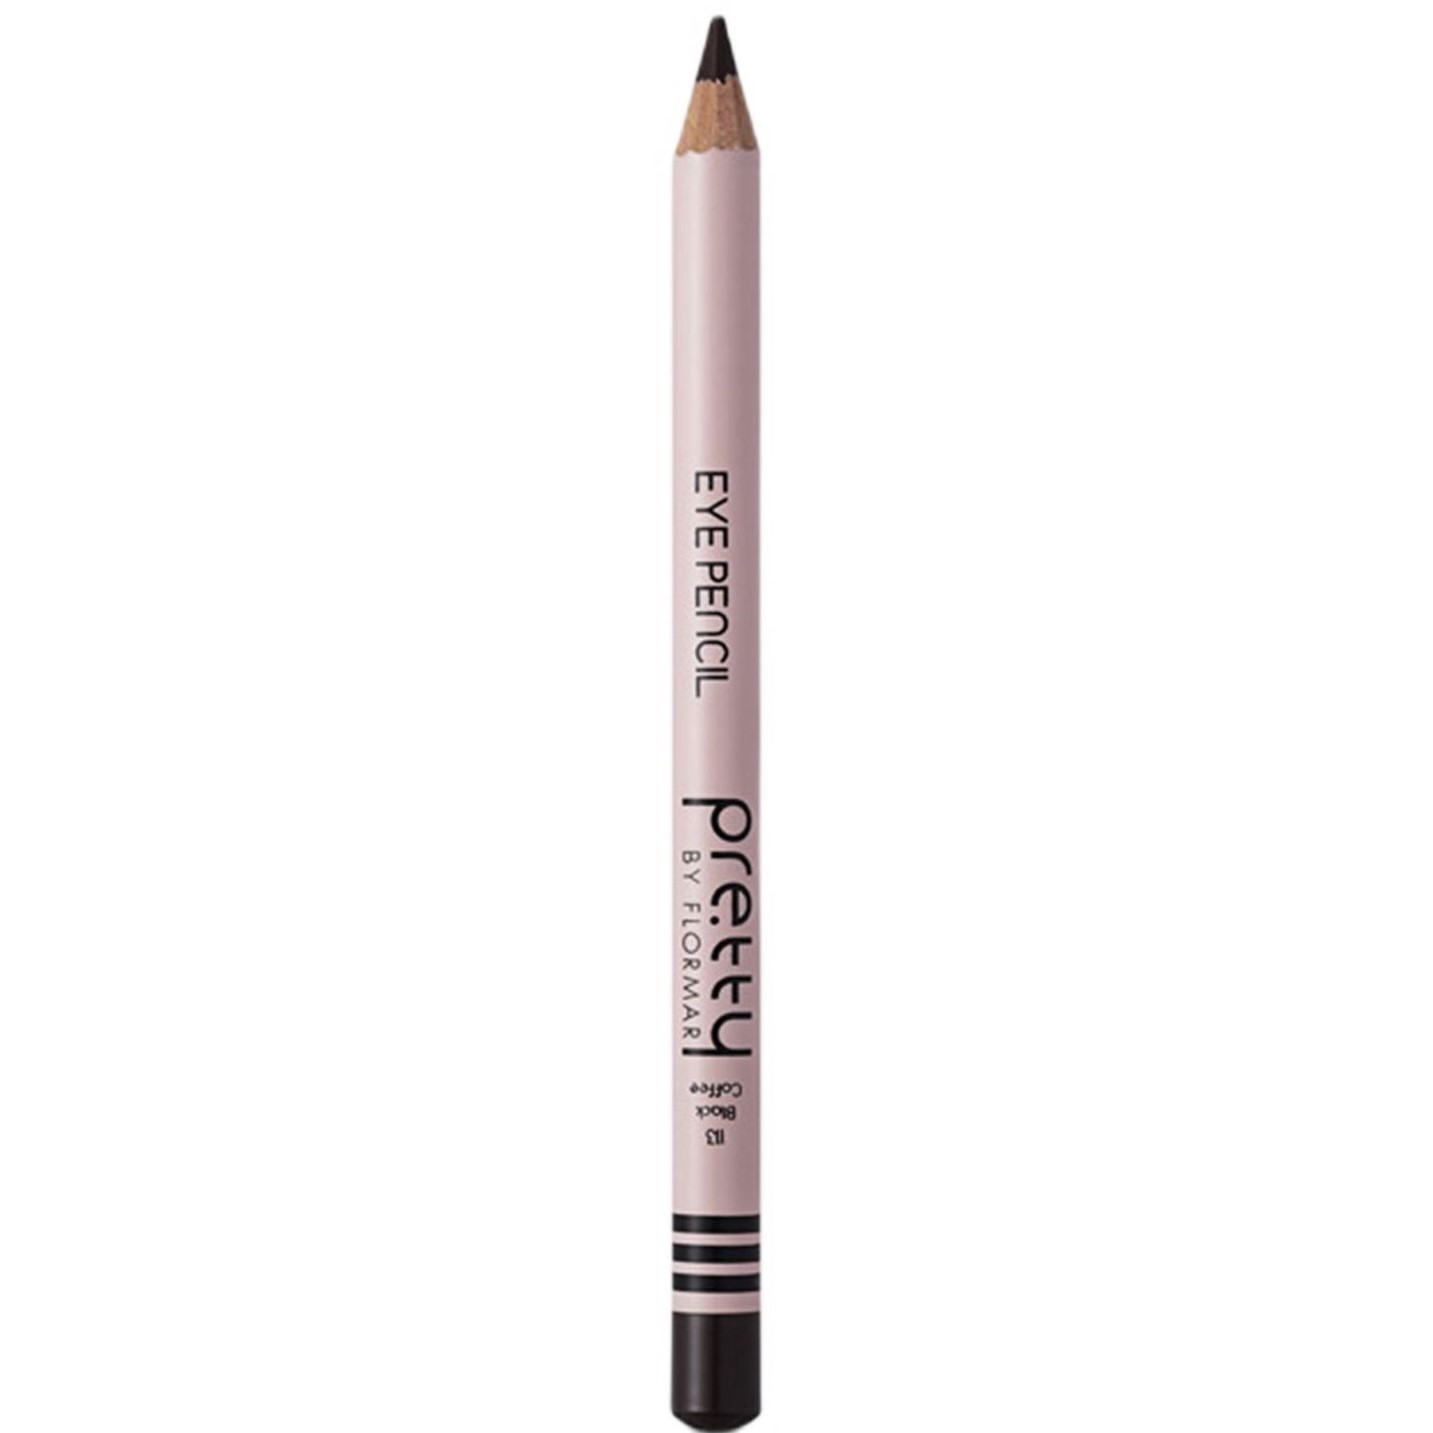 Олівець для очей Pretty Eye Pencil відтінок 113 (Black Coffee) 1.14 г - фото 1